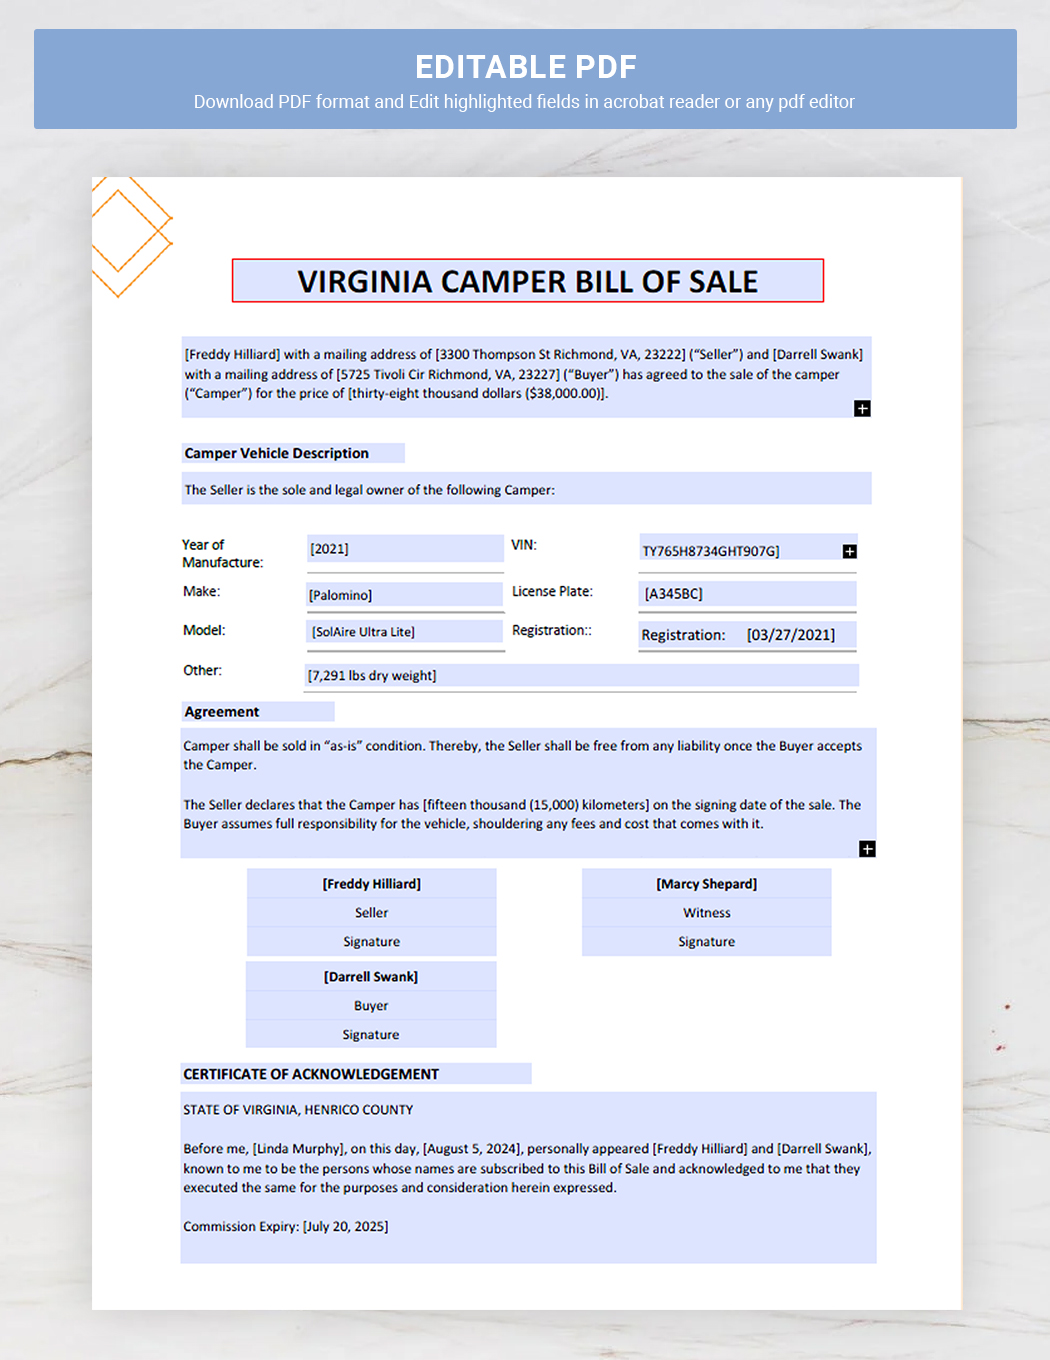 Virginia Camper Bill of Sale Template